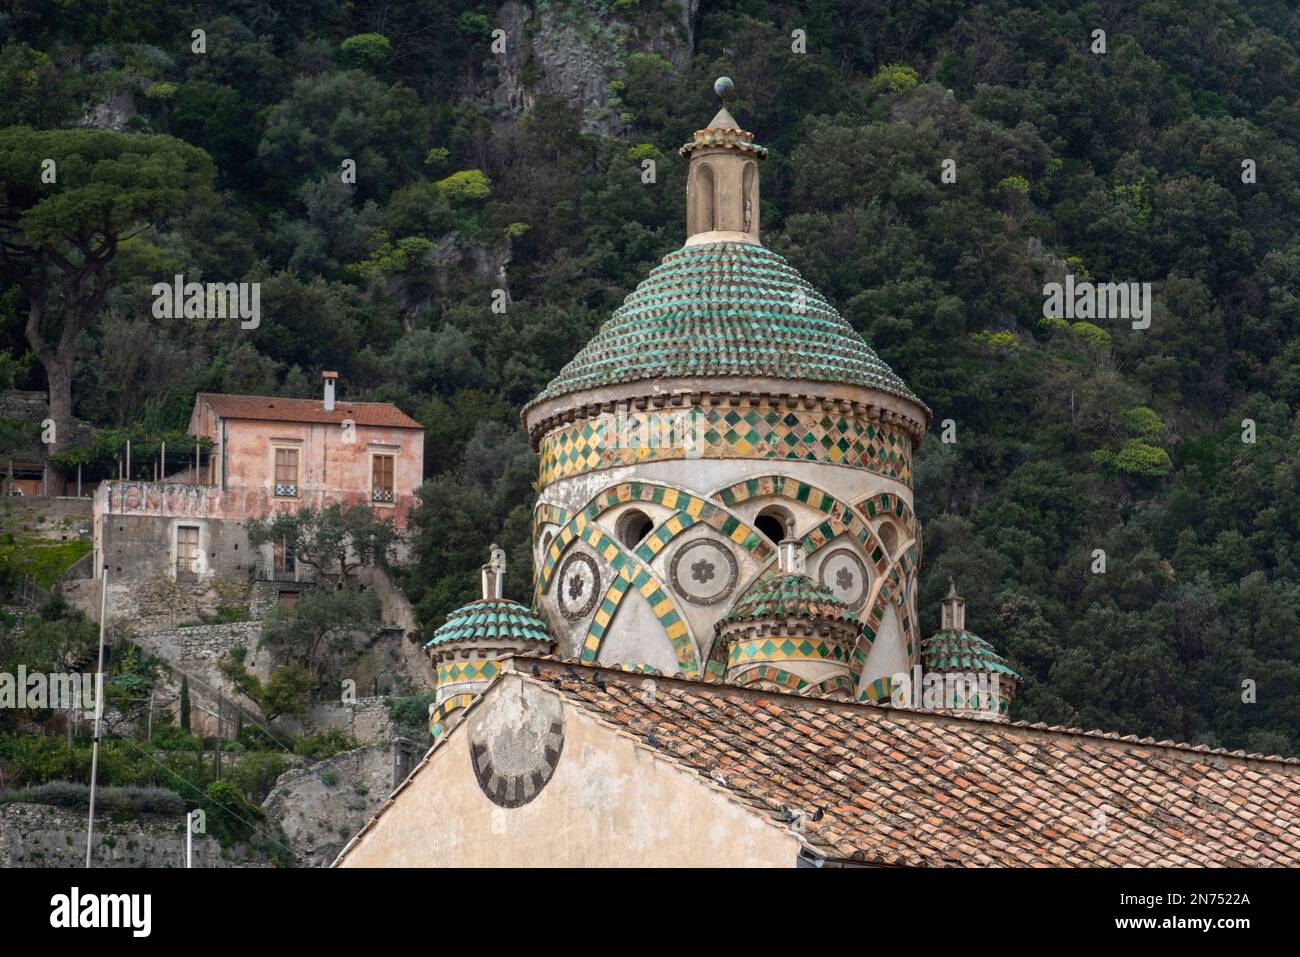 Clocher de la célèbre cathédrale de la ville d'Amalfi, dans le sud de l'Italie Banque D'Images